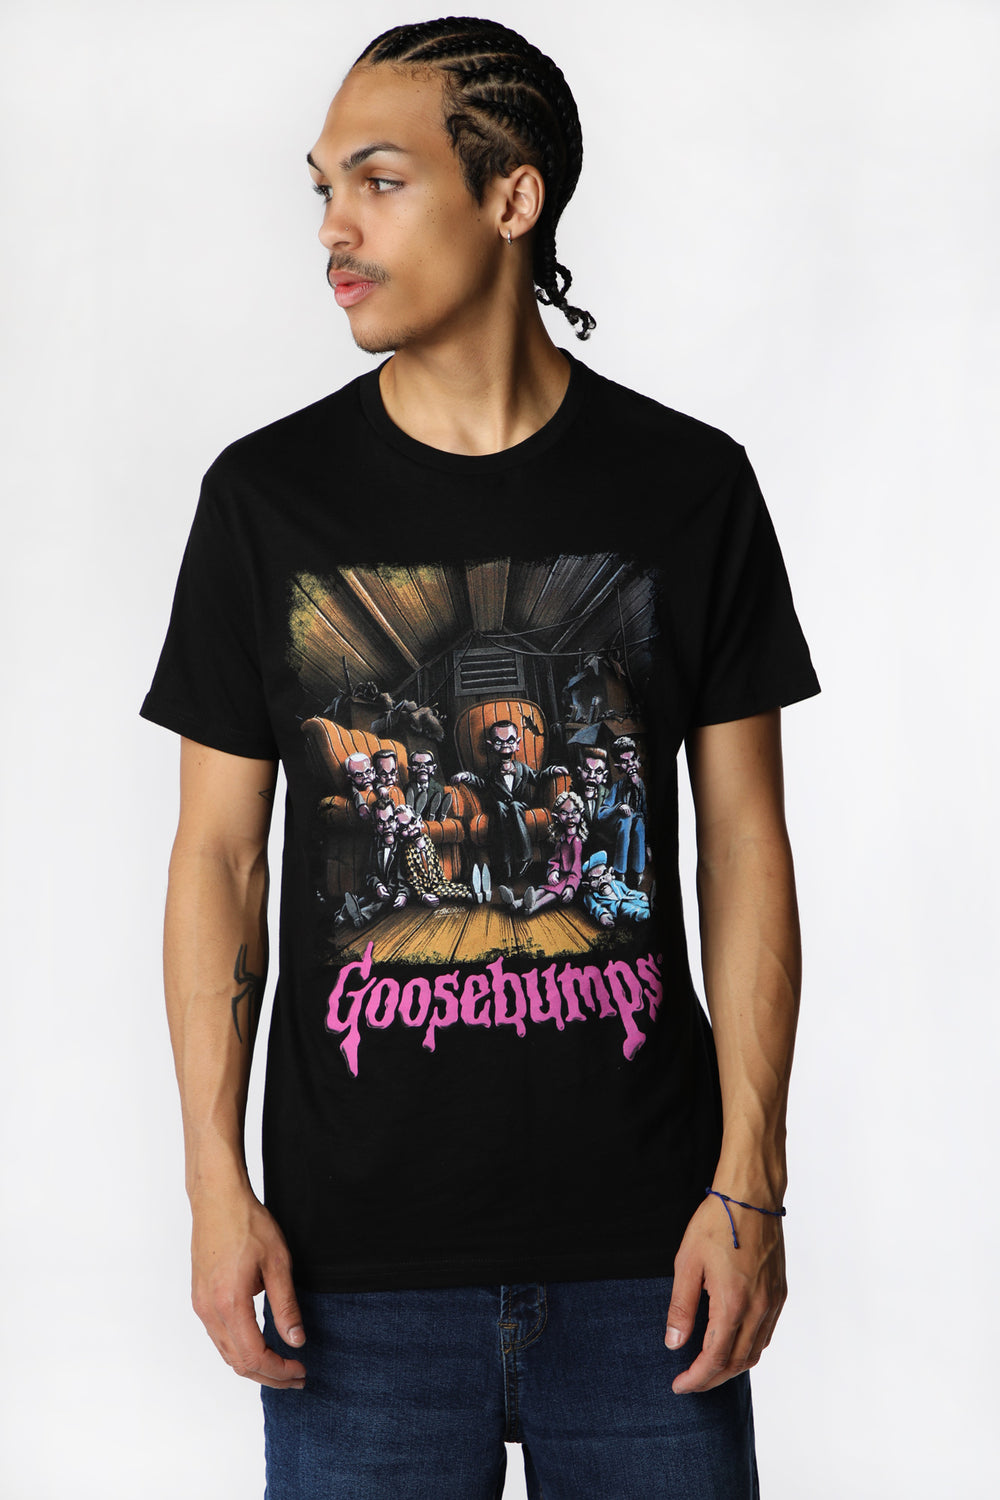 T-Shirt Imprimé Goosebumps Family Homme T-Shirt Imprimé Goosebumps Family Homme